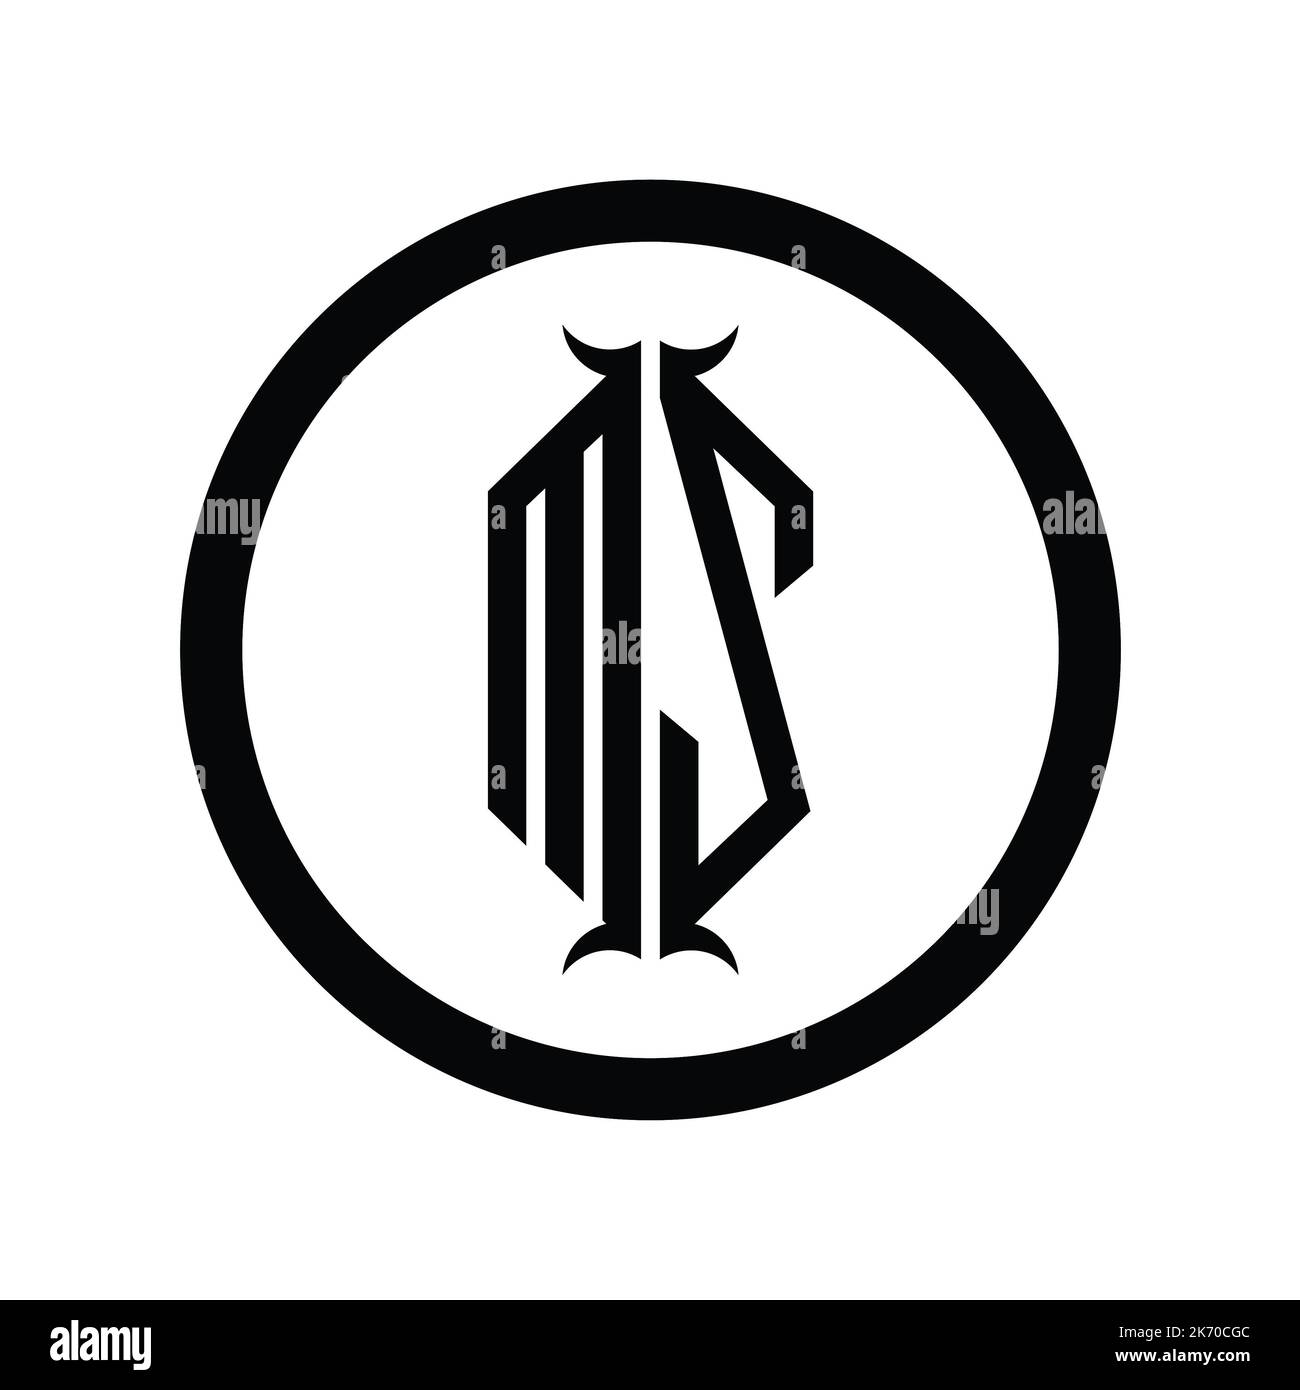 ZM Logo monogram letter with hexagon horn shape design template Stock Photo